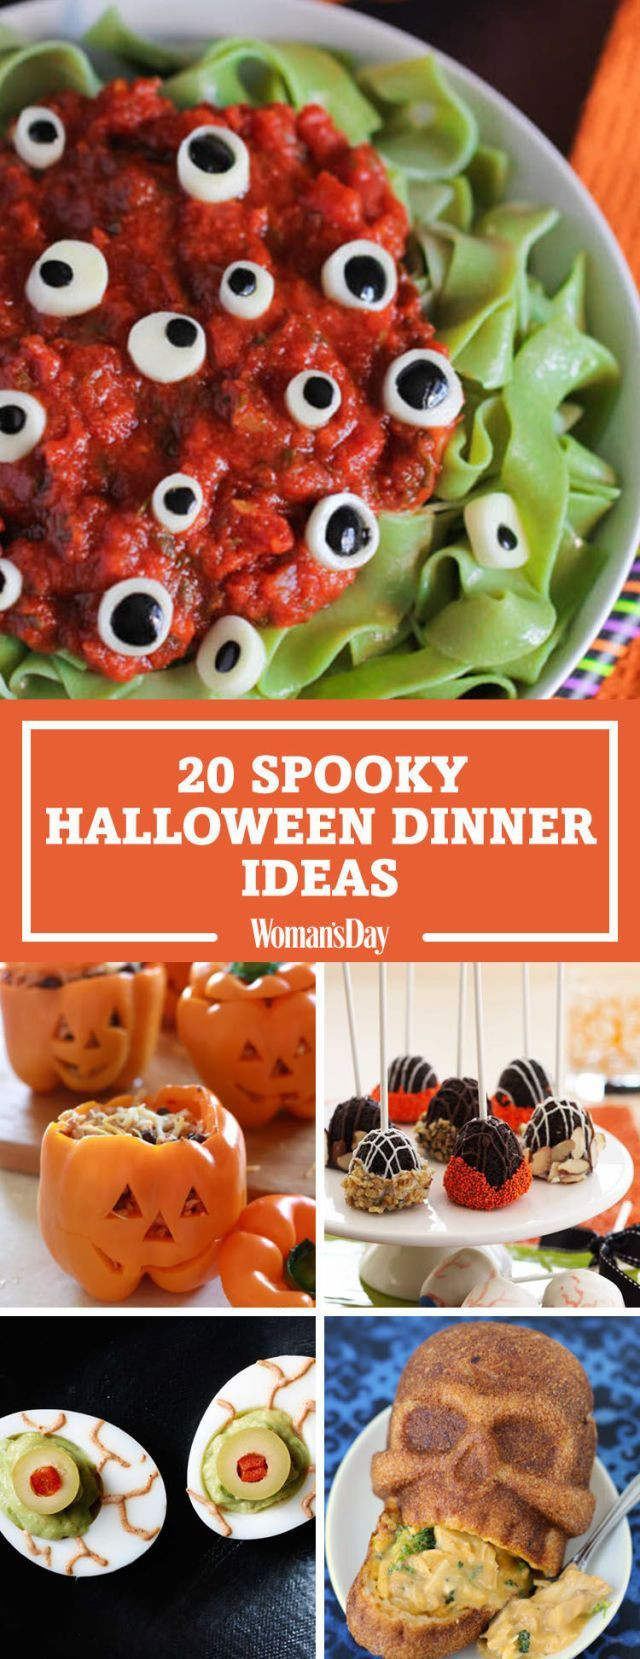 Spooky Halloween Dinners
 25 Spooky Halloween Dinner Ideas